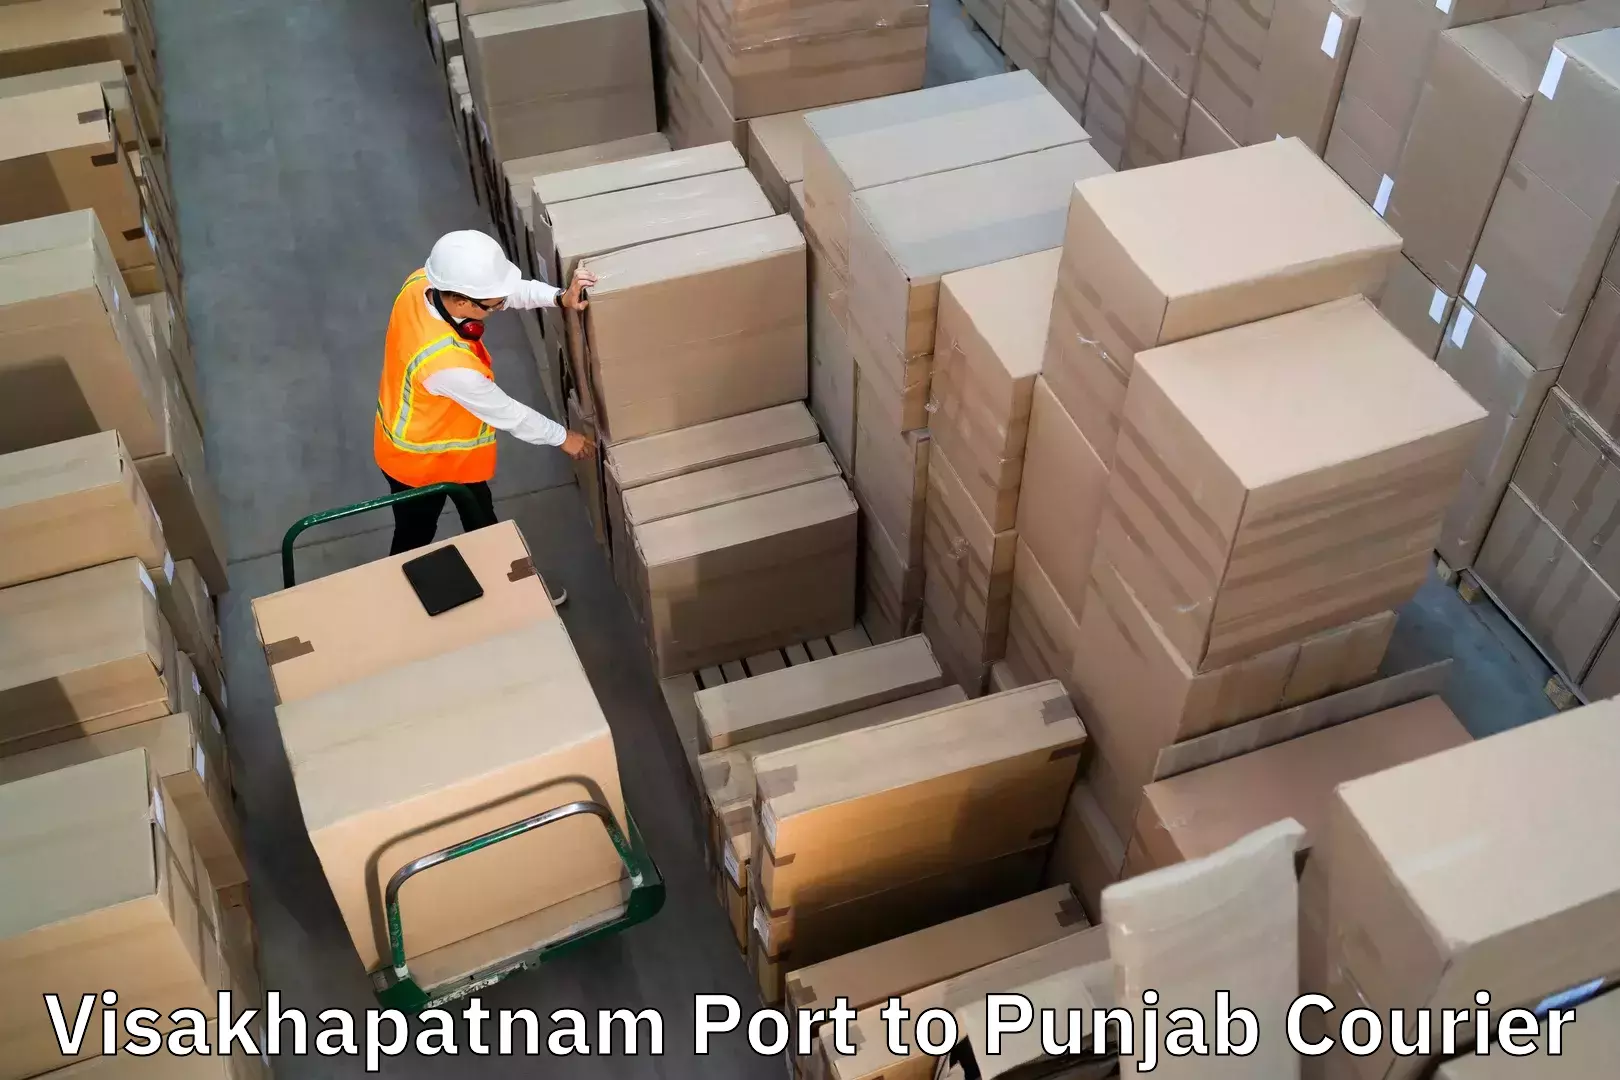 Baggage transport professionals Visakhapatnam Port to Ropar